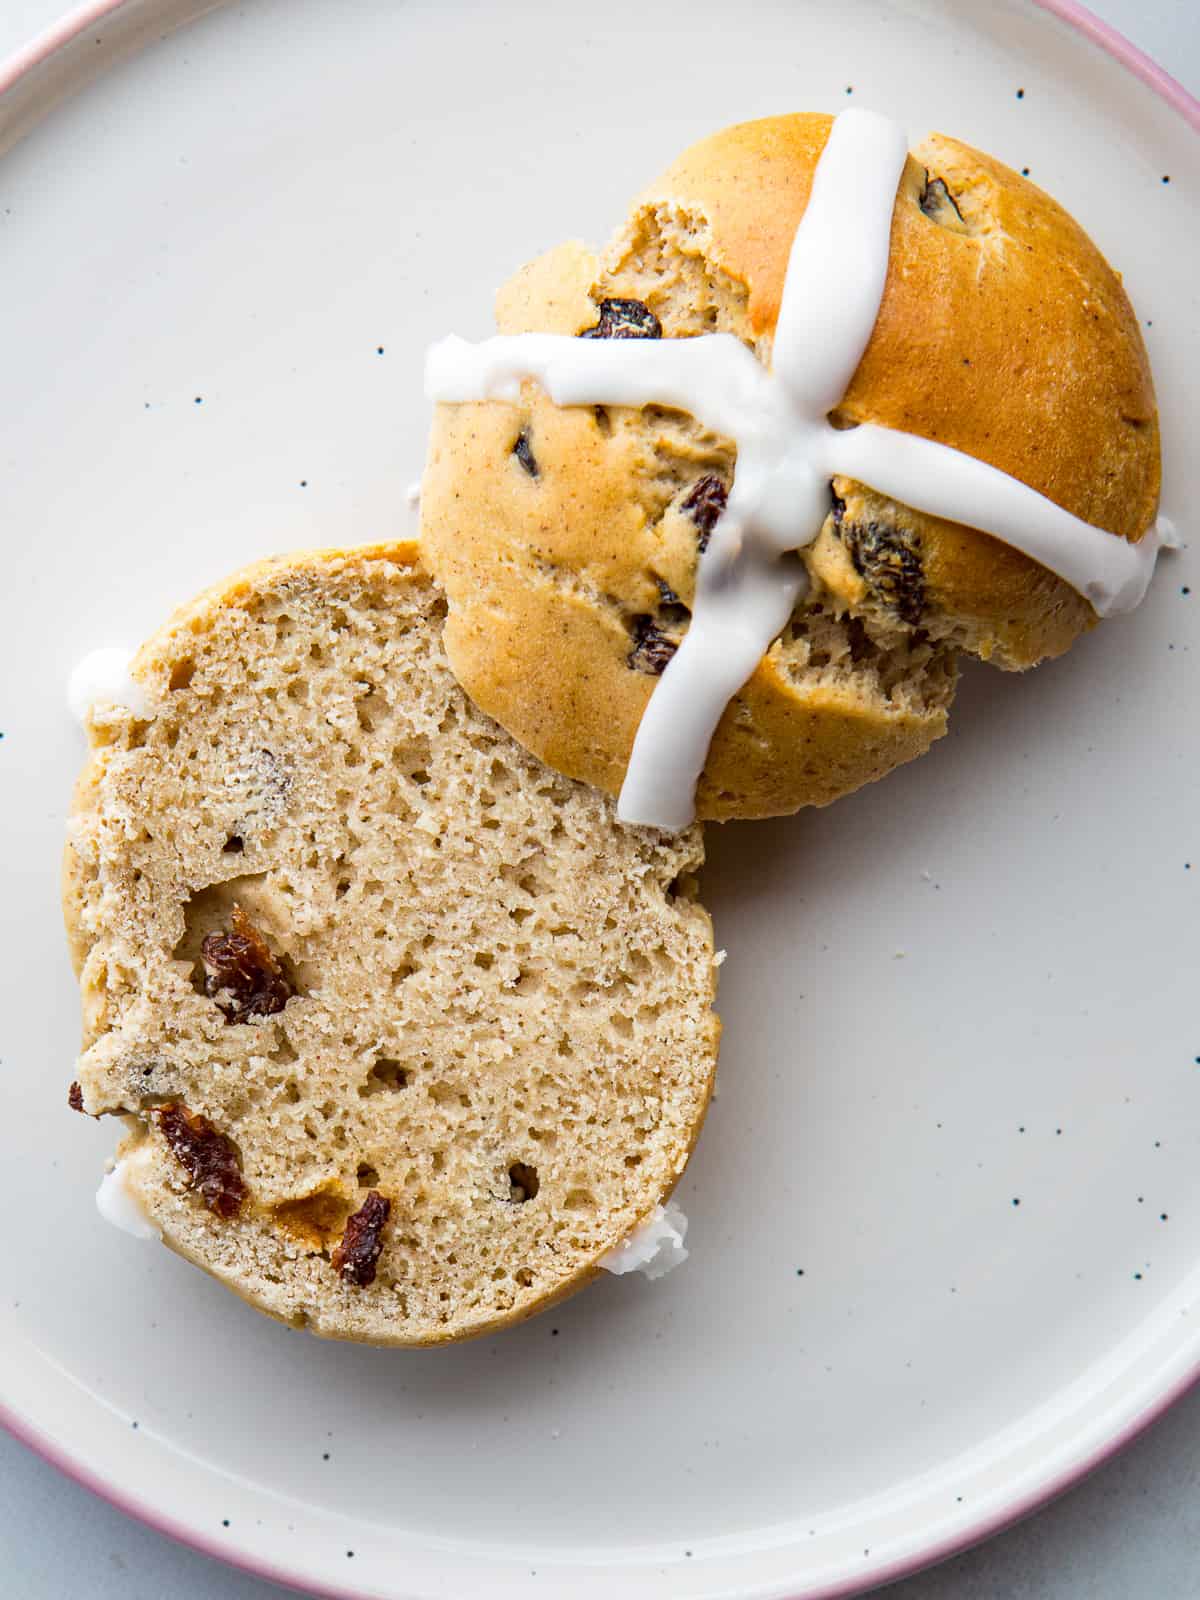 Gluten-free hot cross bun split in half on a plate.